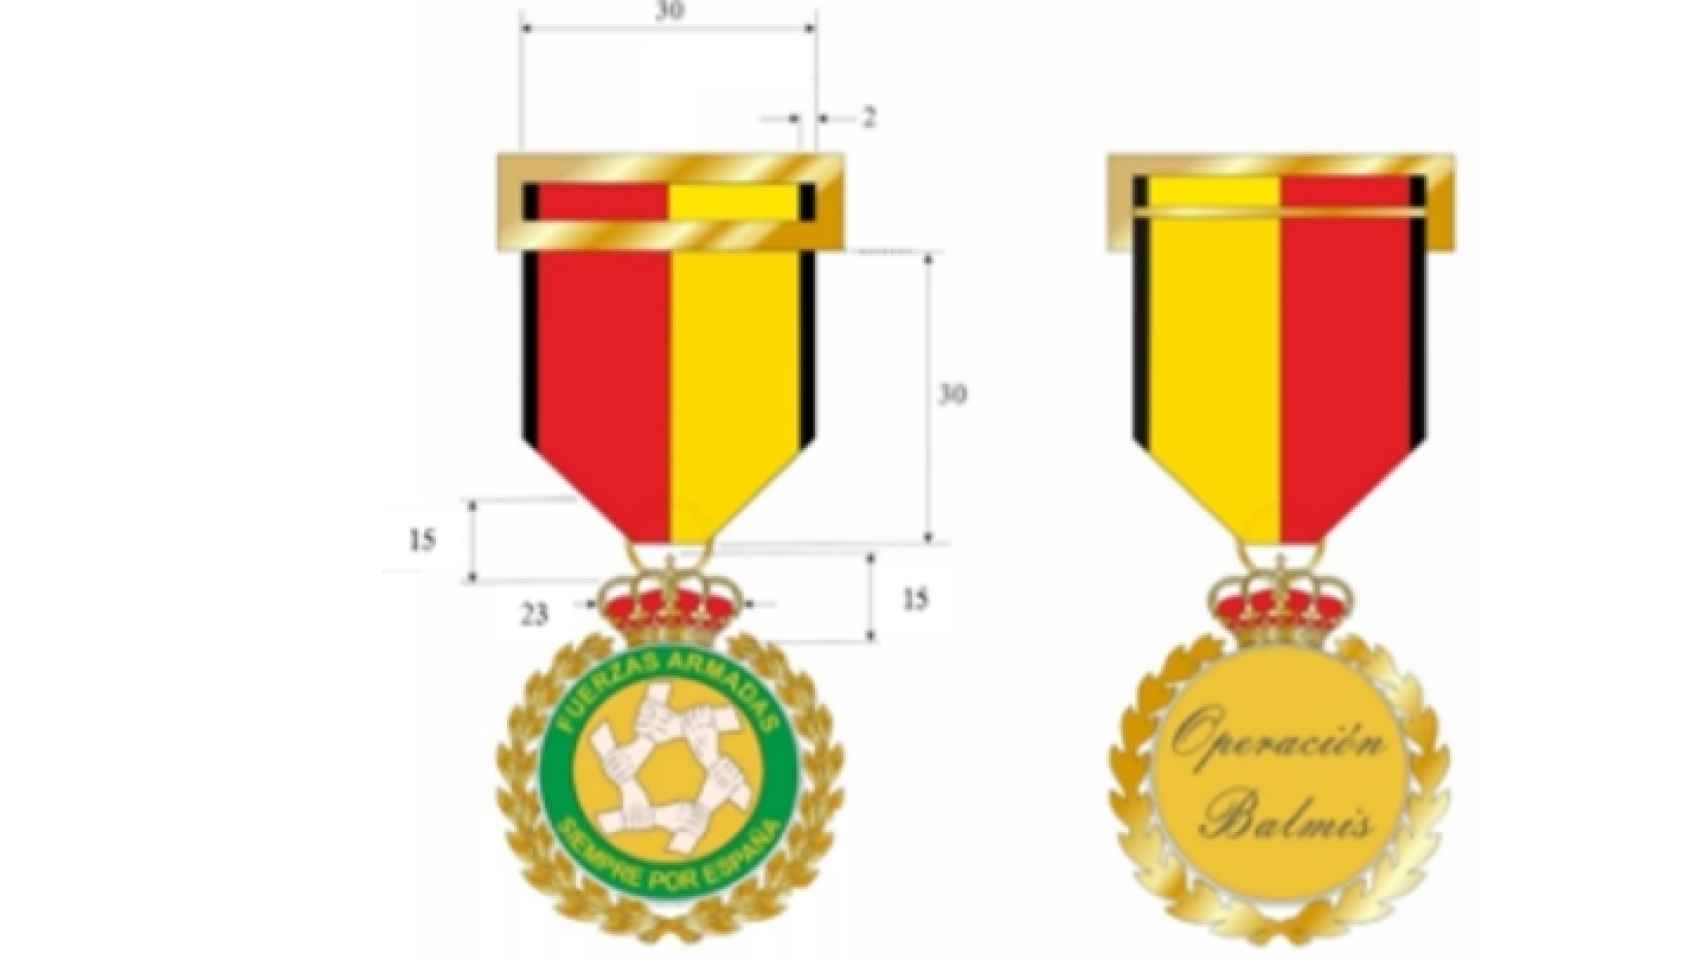 La medalla confeccionada por Defensa para premiar a los miembros de las FF.AA.